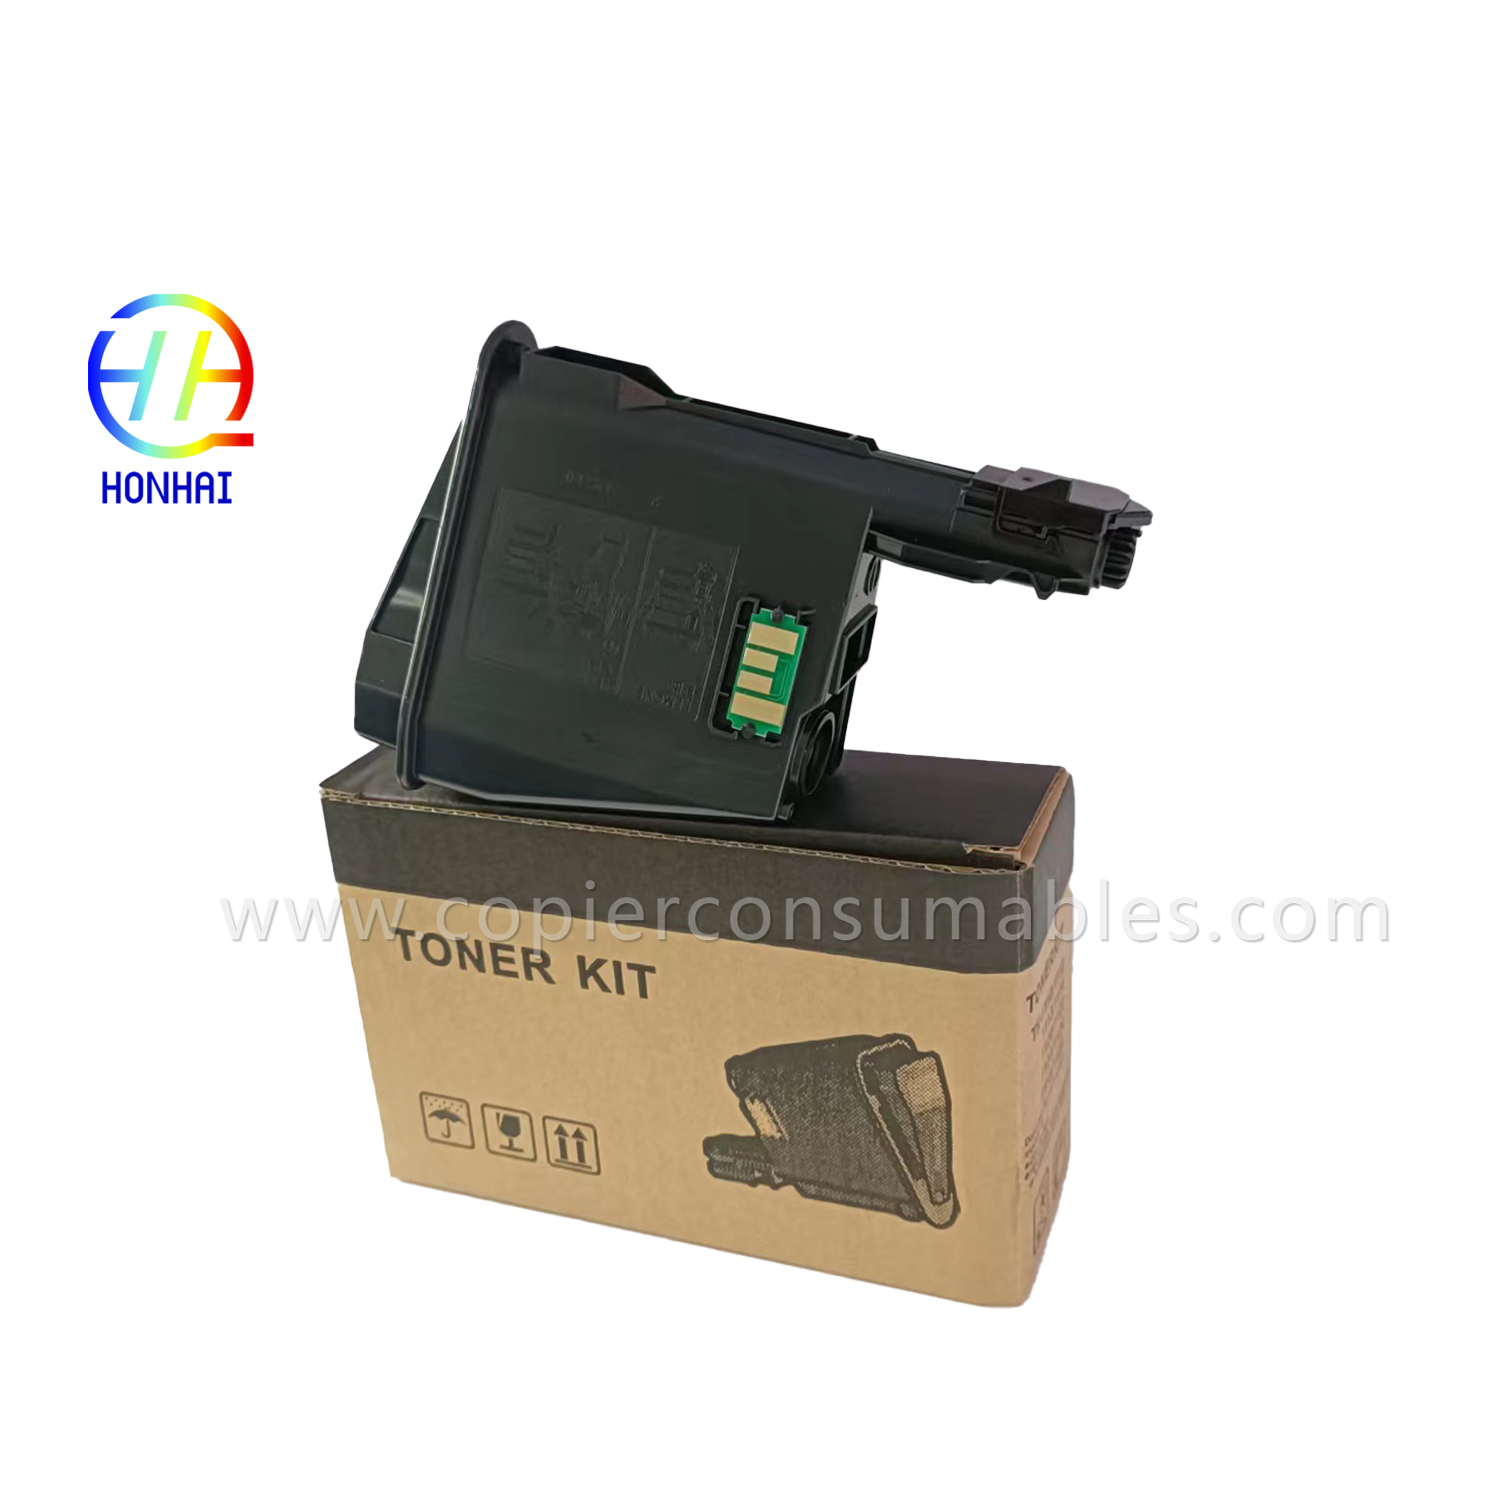 Toner cartridge mo Kyocera ECOSYS FS-1040 1060DN 1020MFP 1041 1120MFP 1025MFP 1061DN